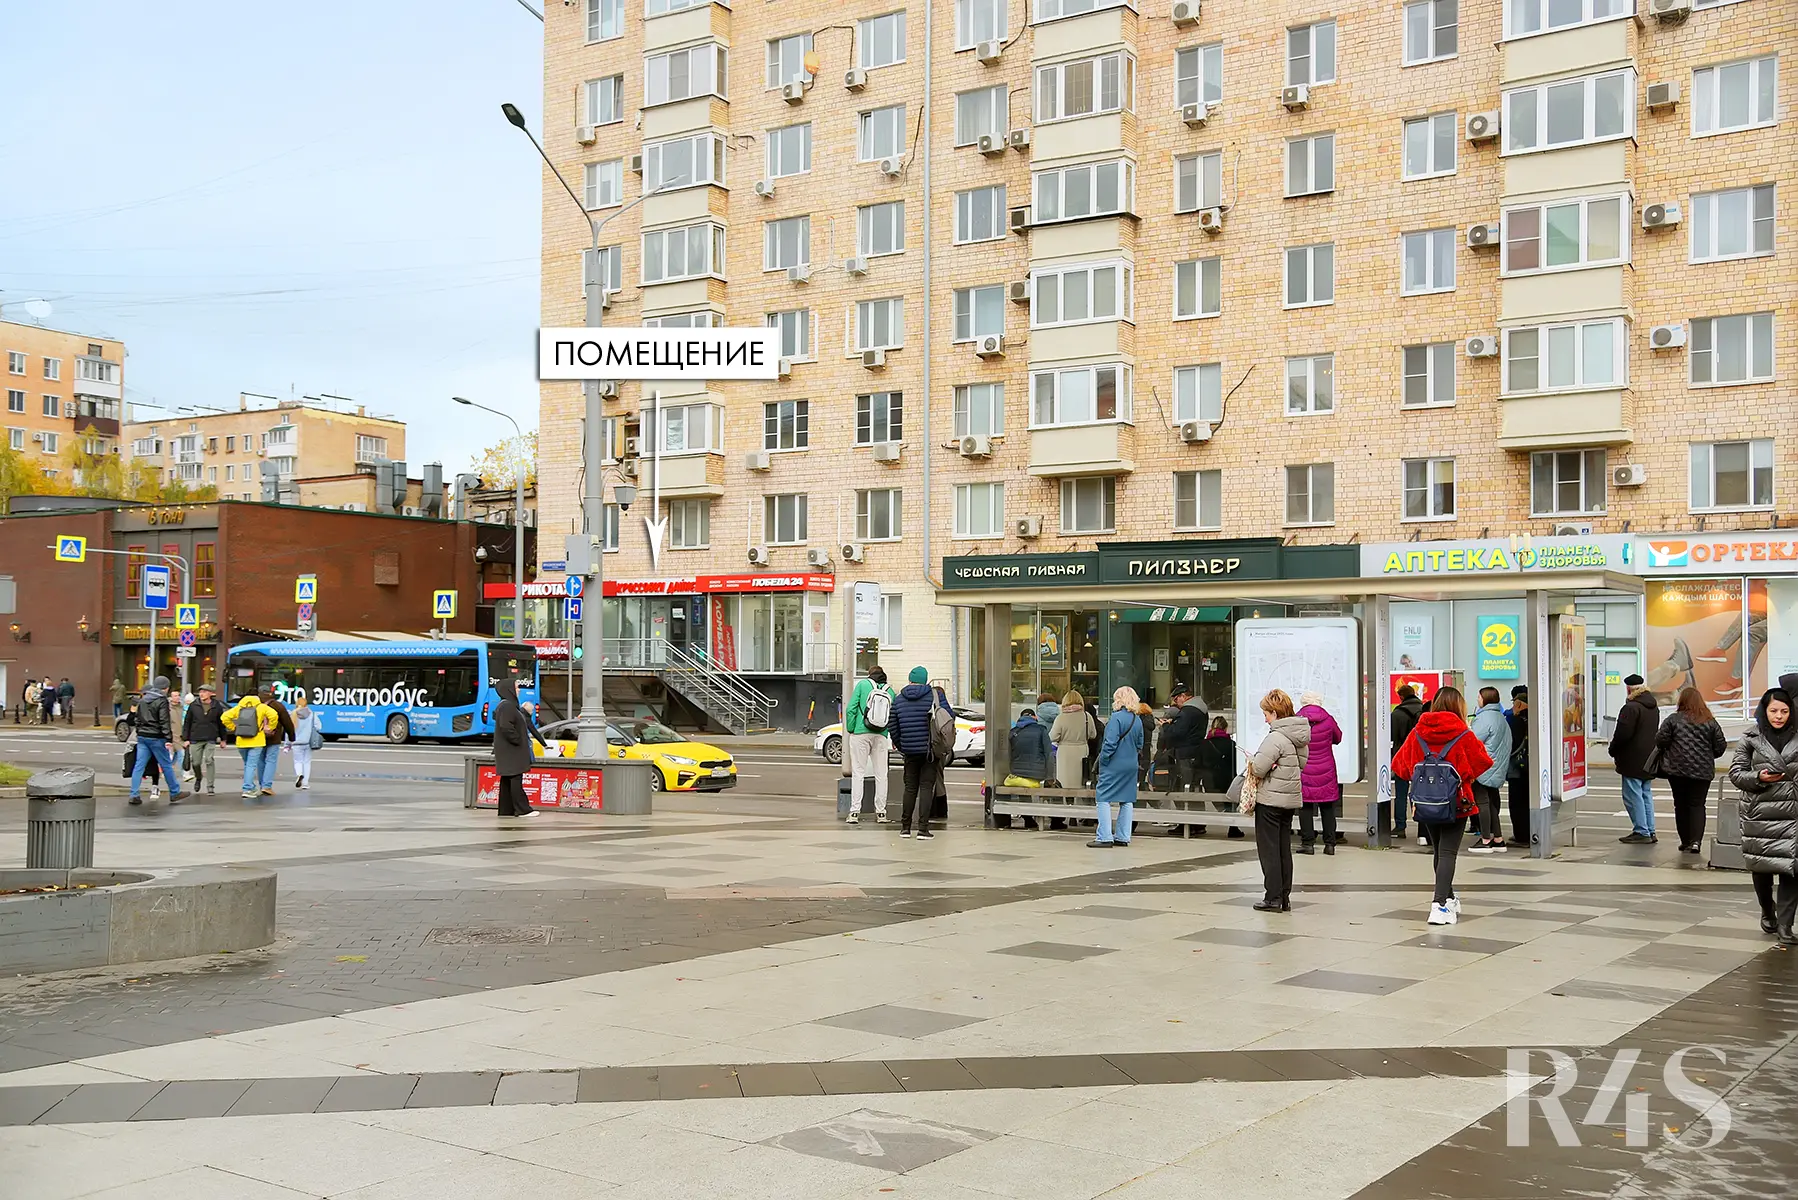 Продажа готового арендного бизнеса площадью 30.2 м2 в Москве: Пресненский Вал, 4/29 R4S | Realty4Sale